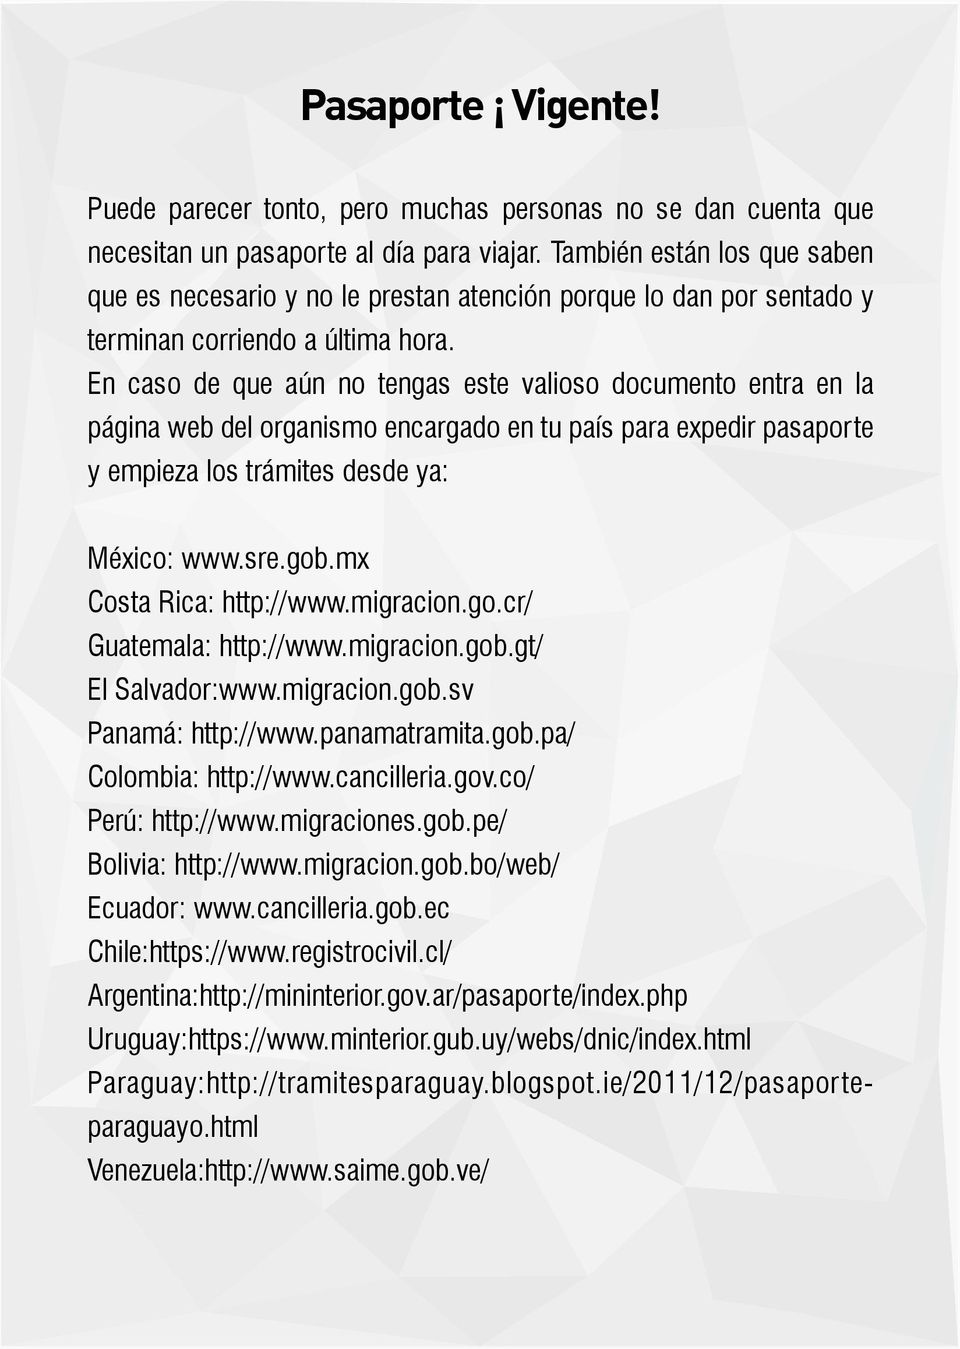 En caso de que aún no tengas este valioso documento entra en la página web del organismo encargado en tu país para expedir pasaporte y empieza los trámites desde ya: México: www.sre.gob.